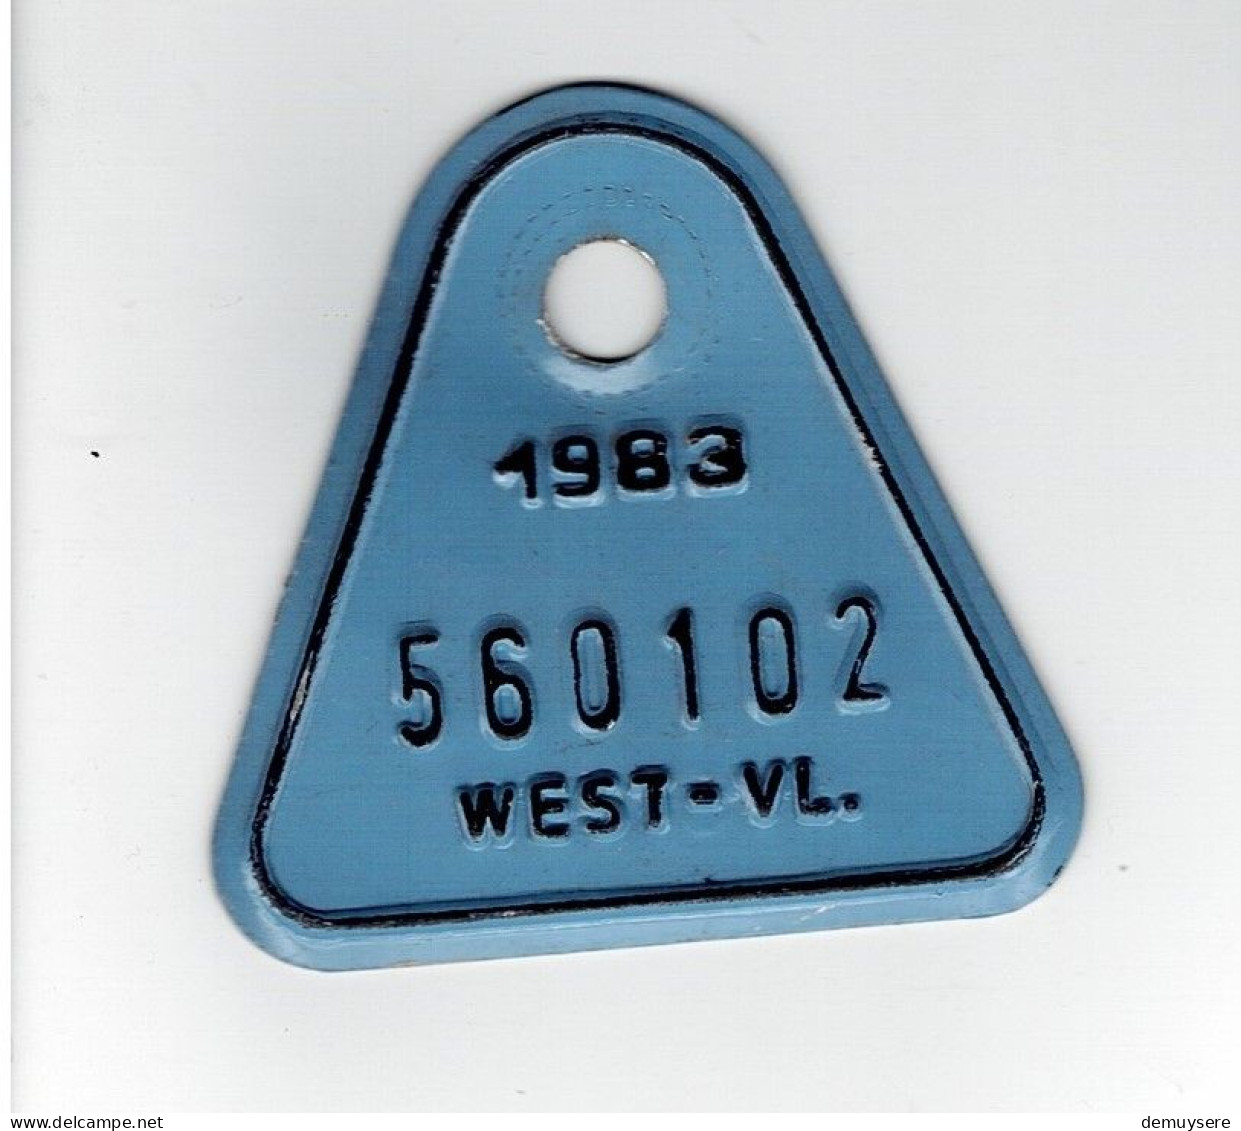 LADE D - FIETSPLAAT - 1983  -  WEST-VL - 560102 - Kennzeichen & Nummernschilder